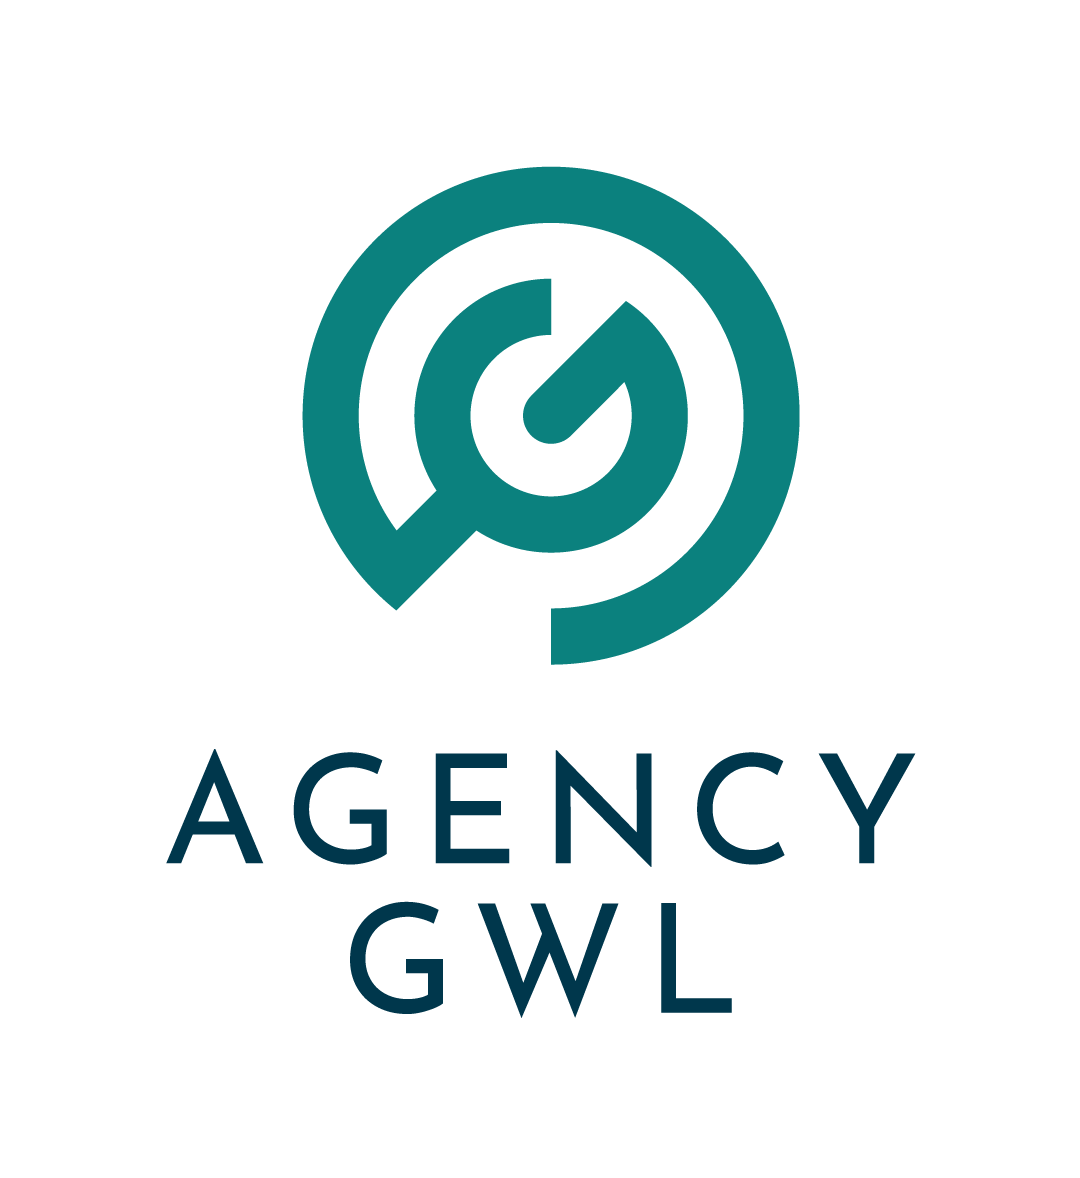 Agency GWL